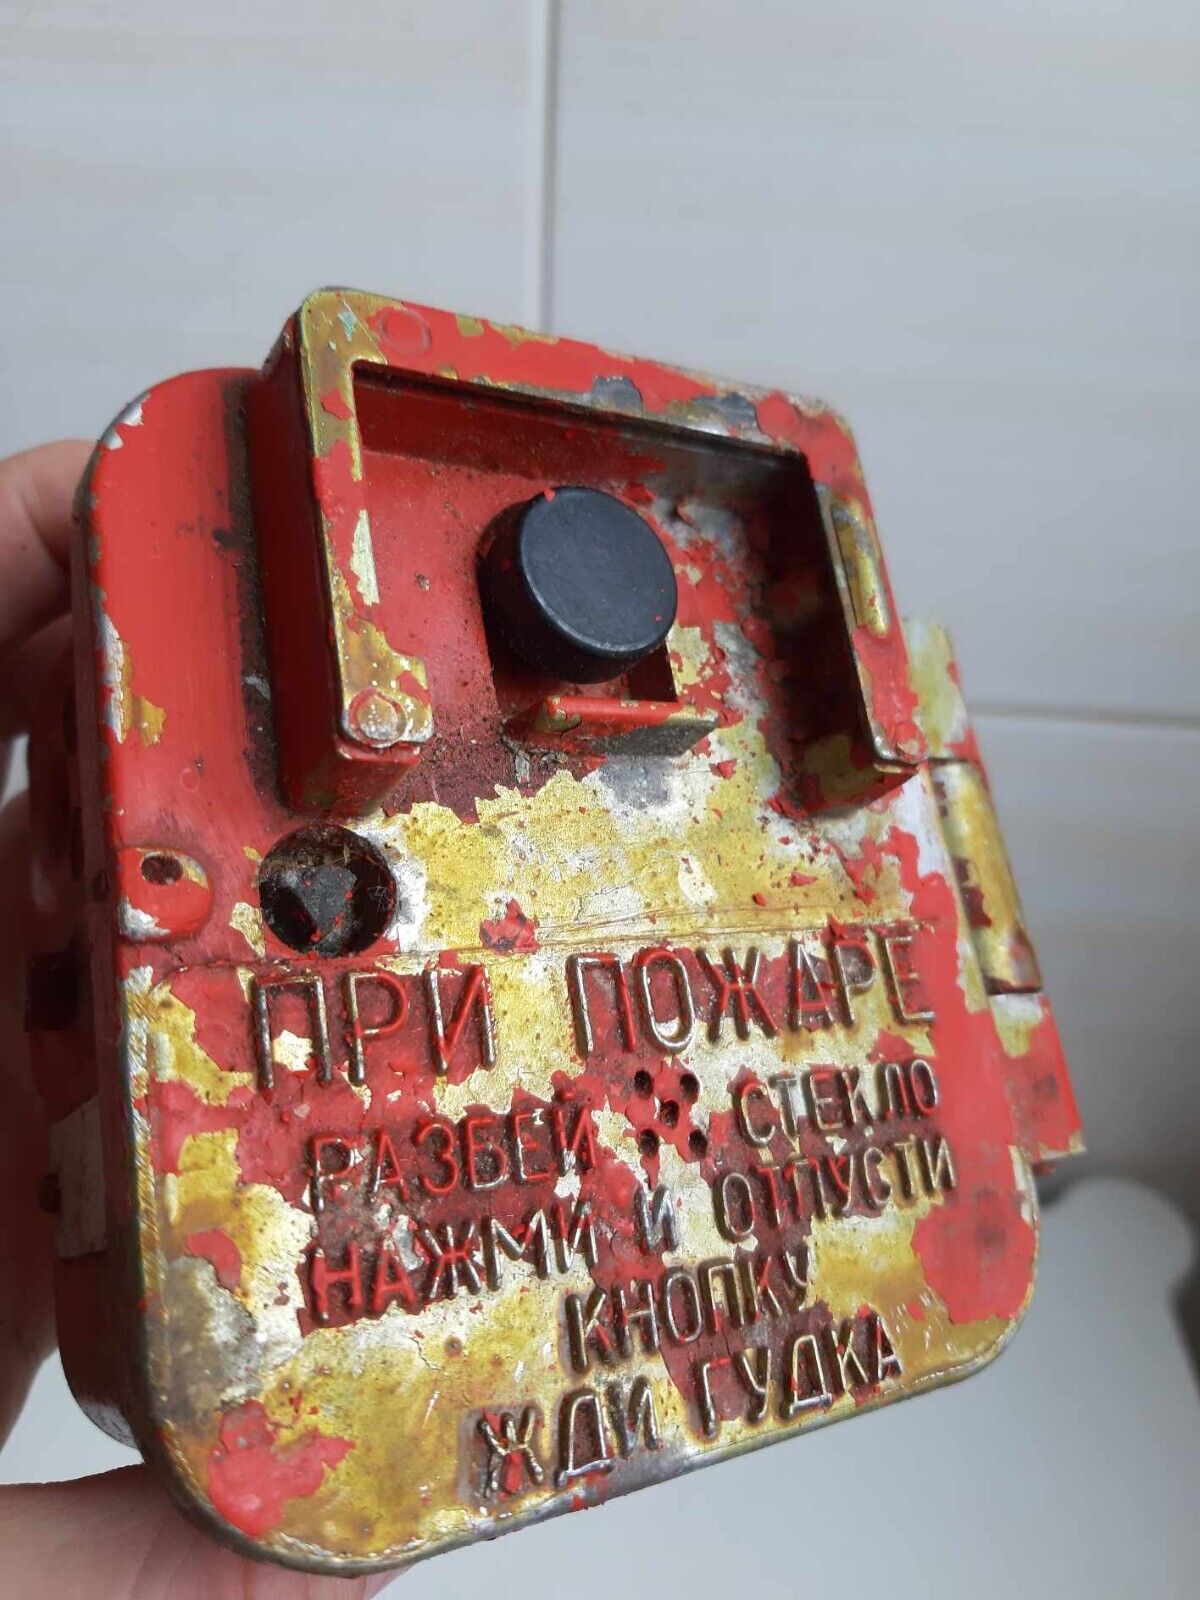 Soviet wall fire alarm button